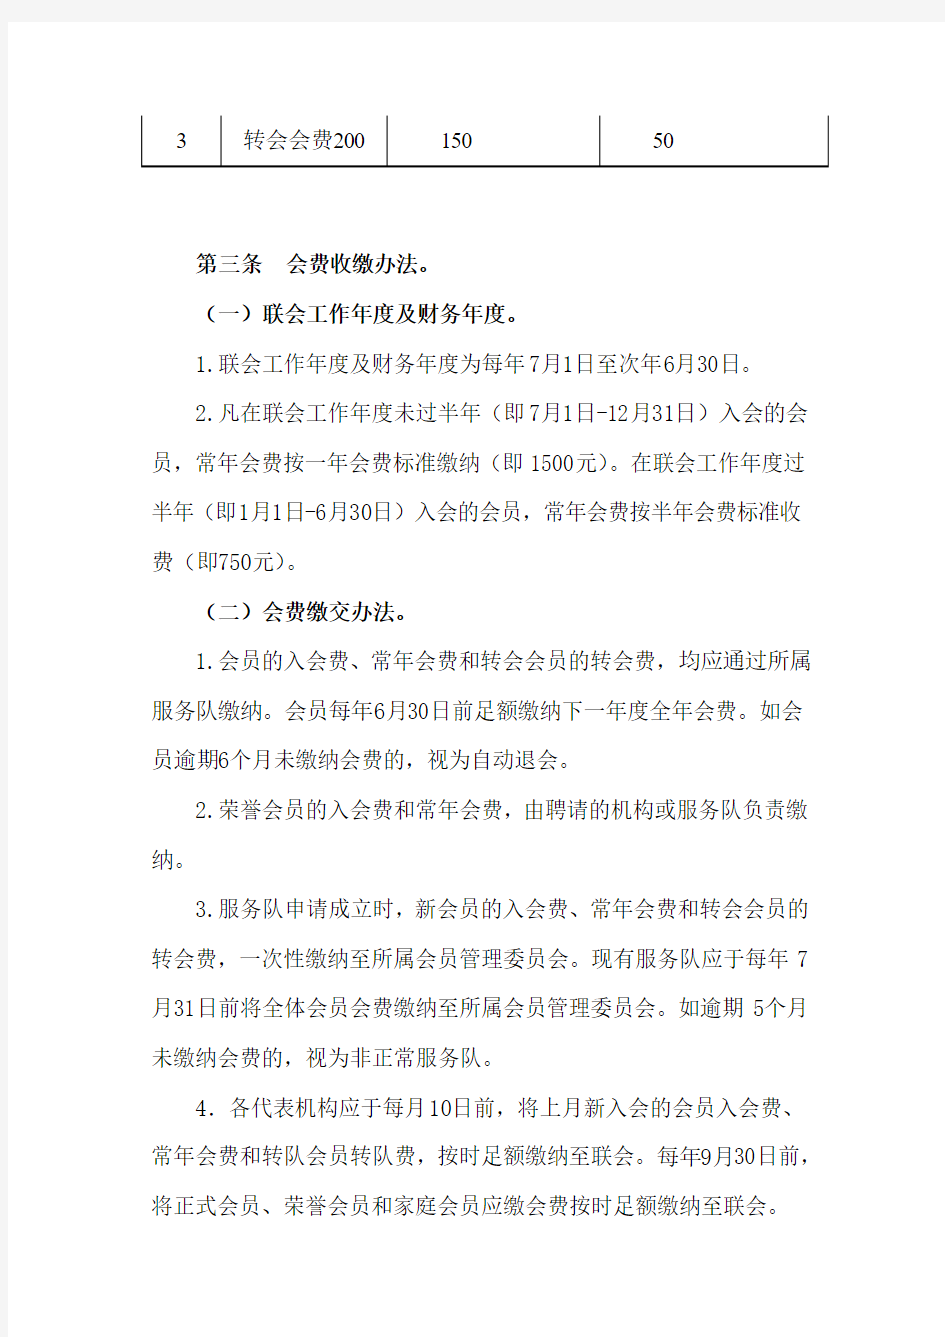 中国狮子联会会费征收、使用管理办法_1107251648